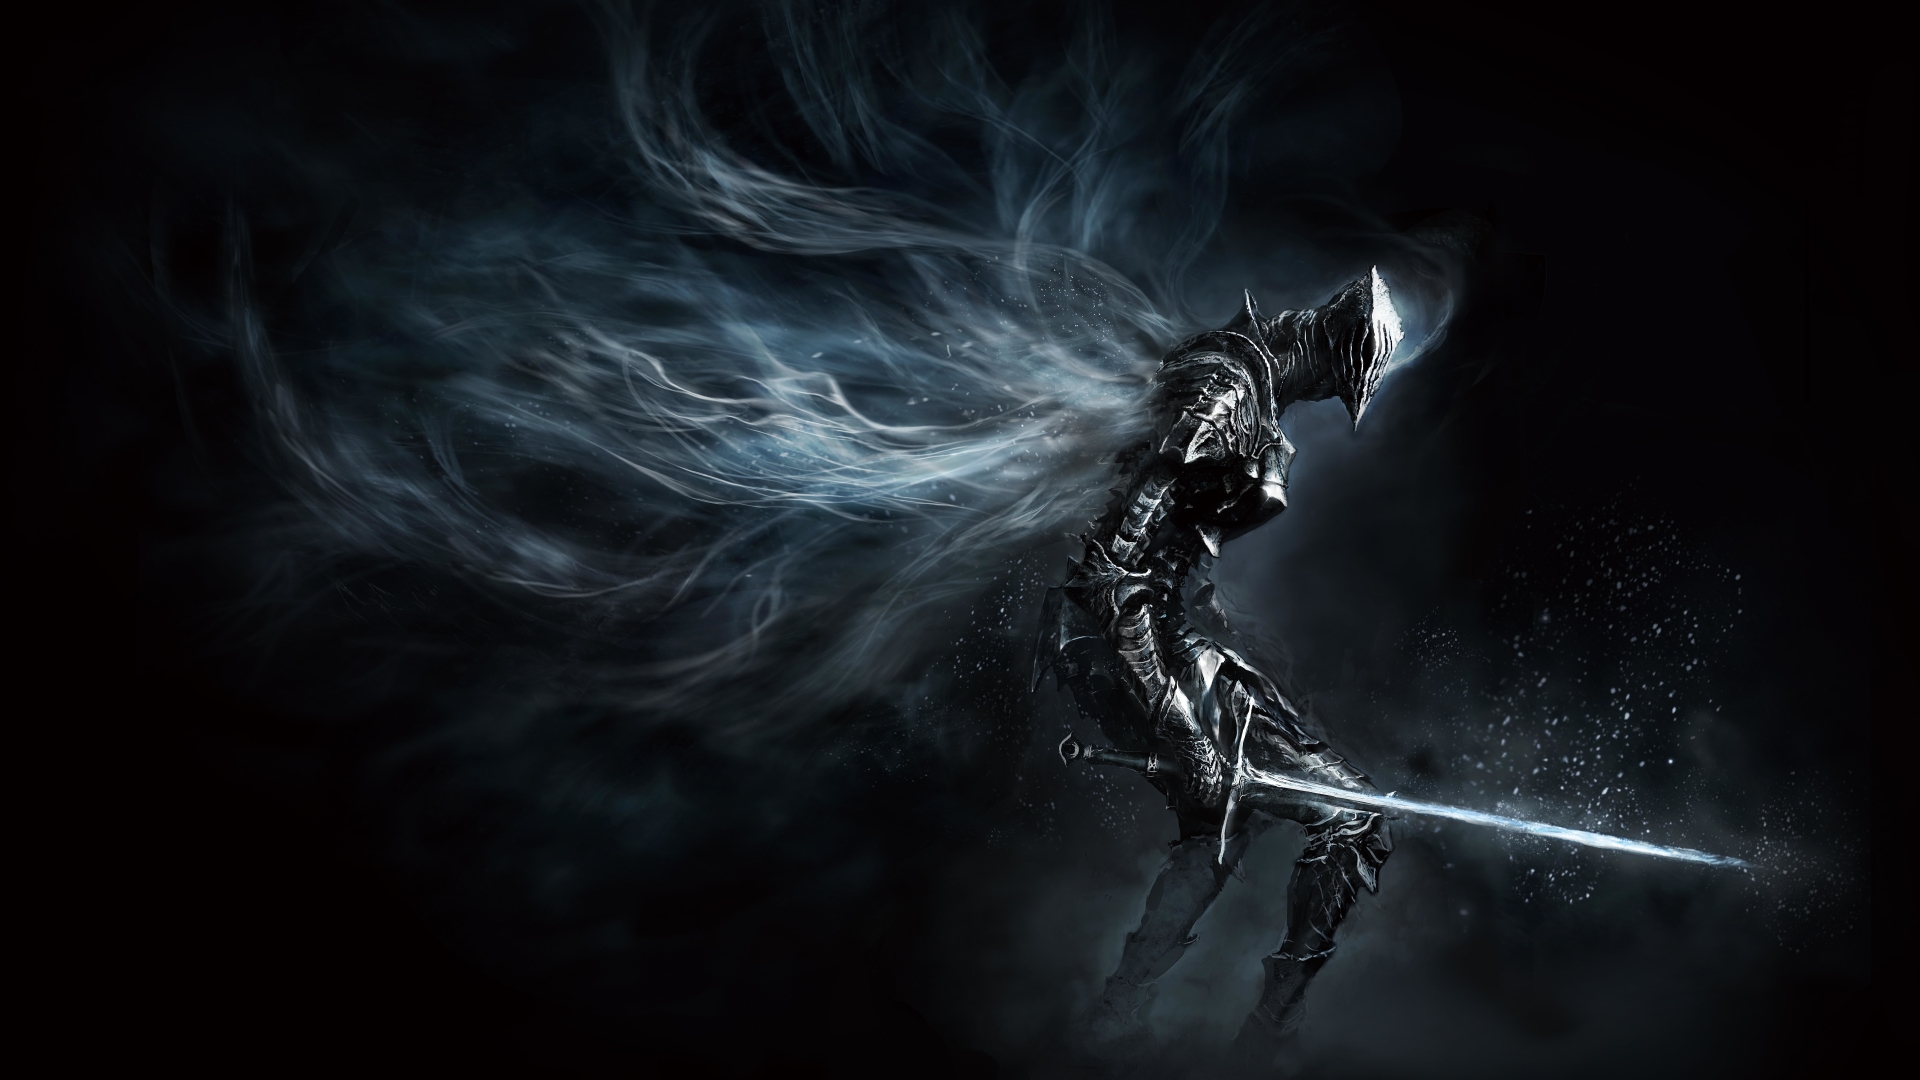 Dark Souls III Wallpapers in Ultra HD